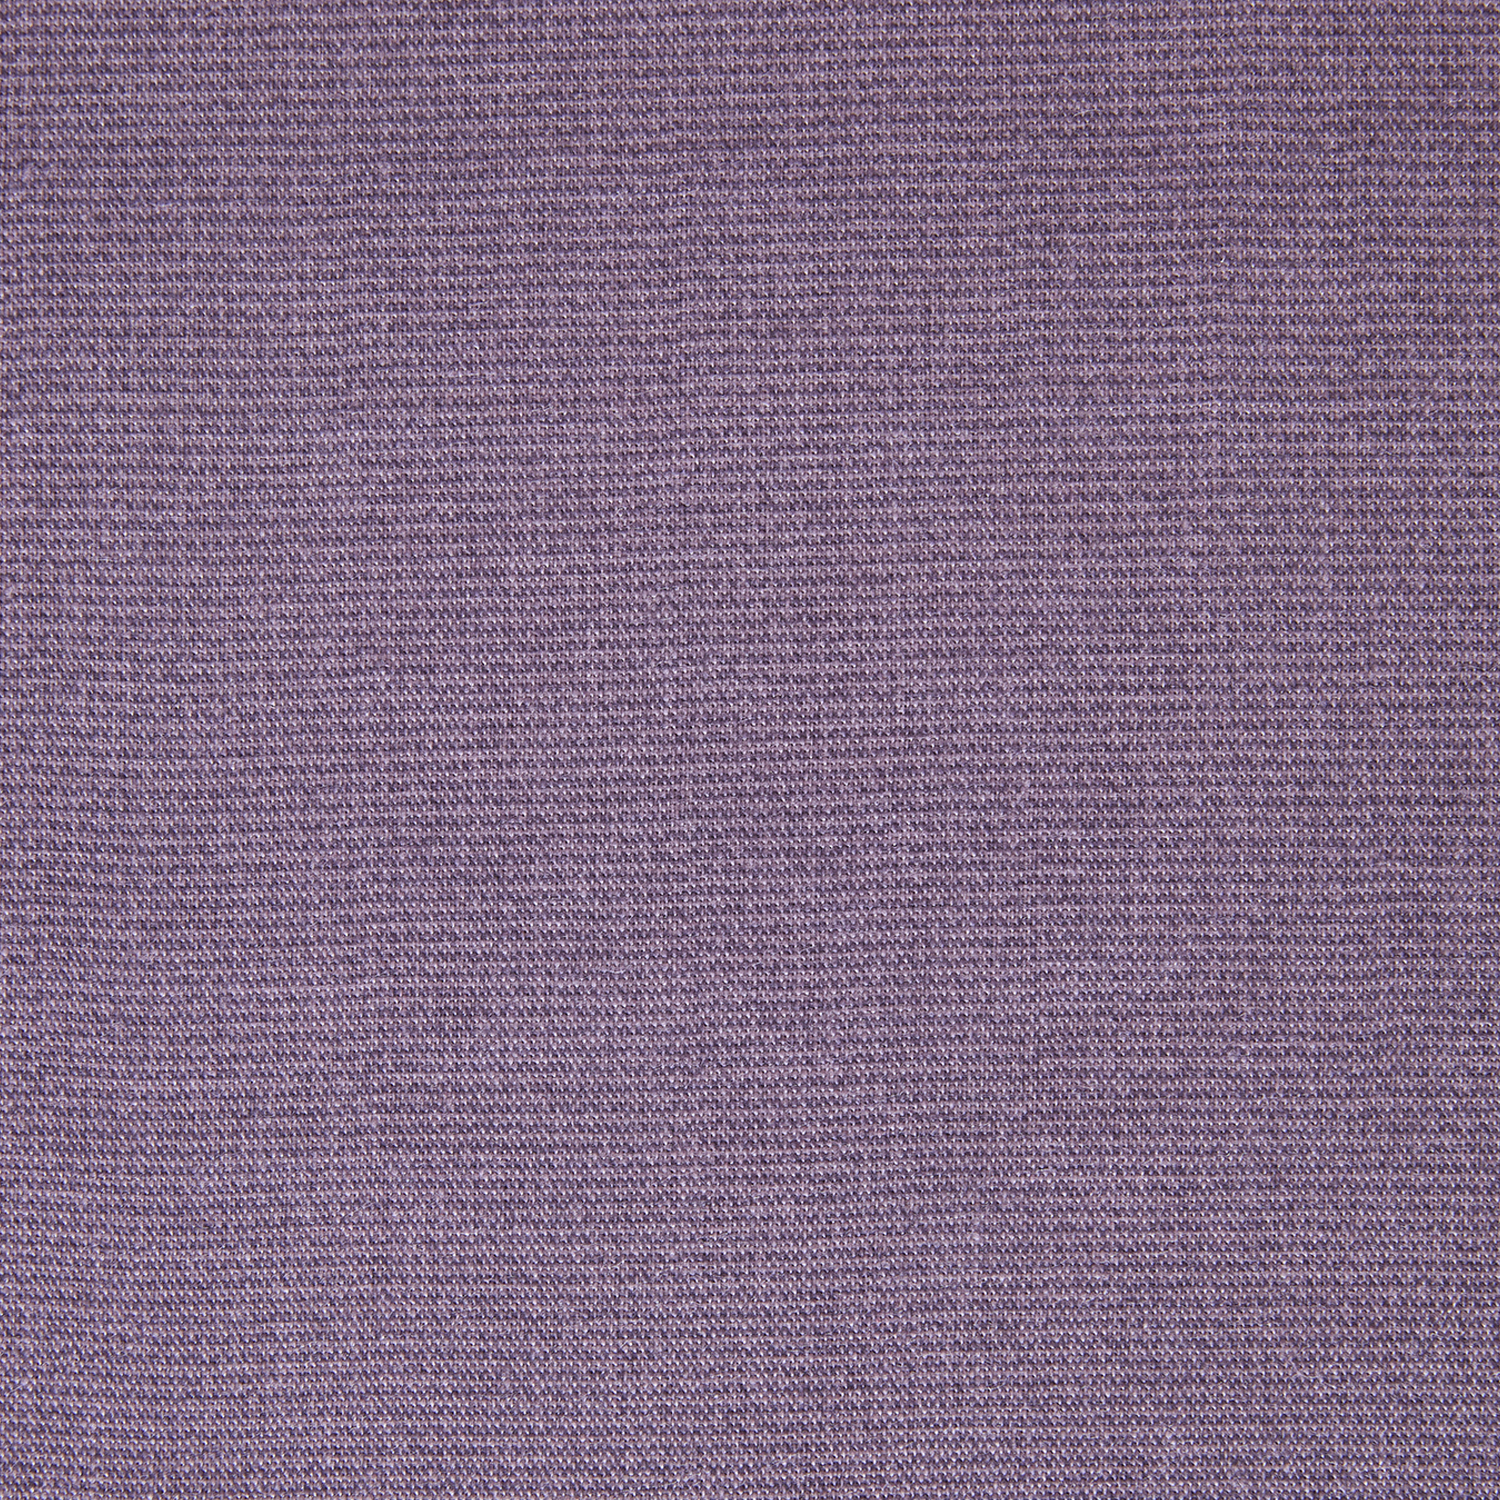 Скатерть Basic CozyHome, цвет фиолетовый, размер 145х145 - фото 6